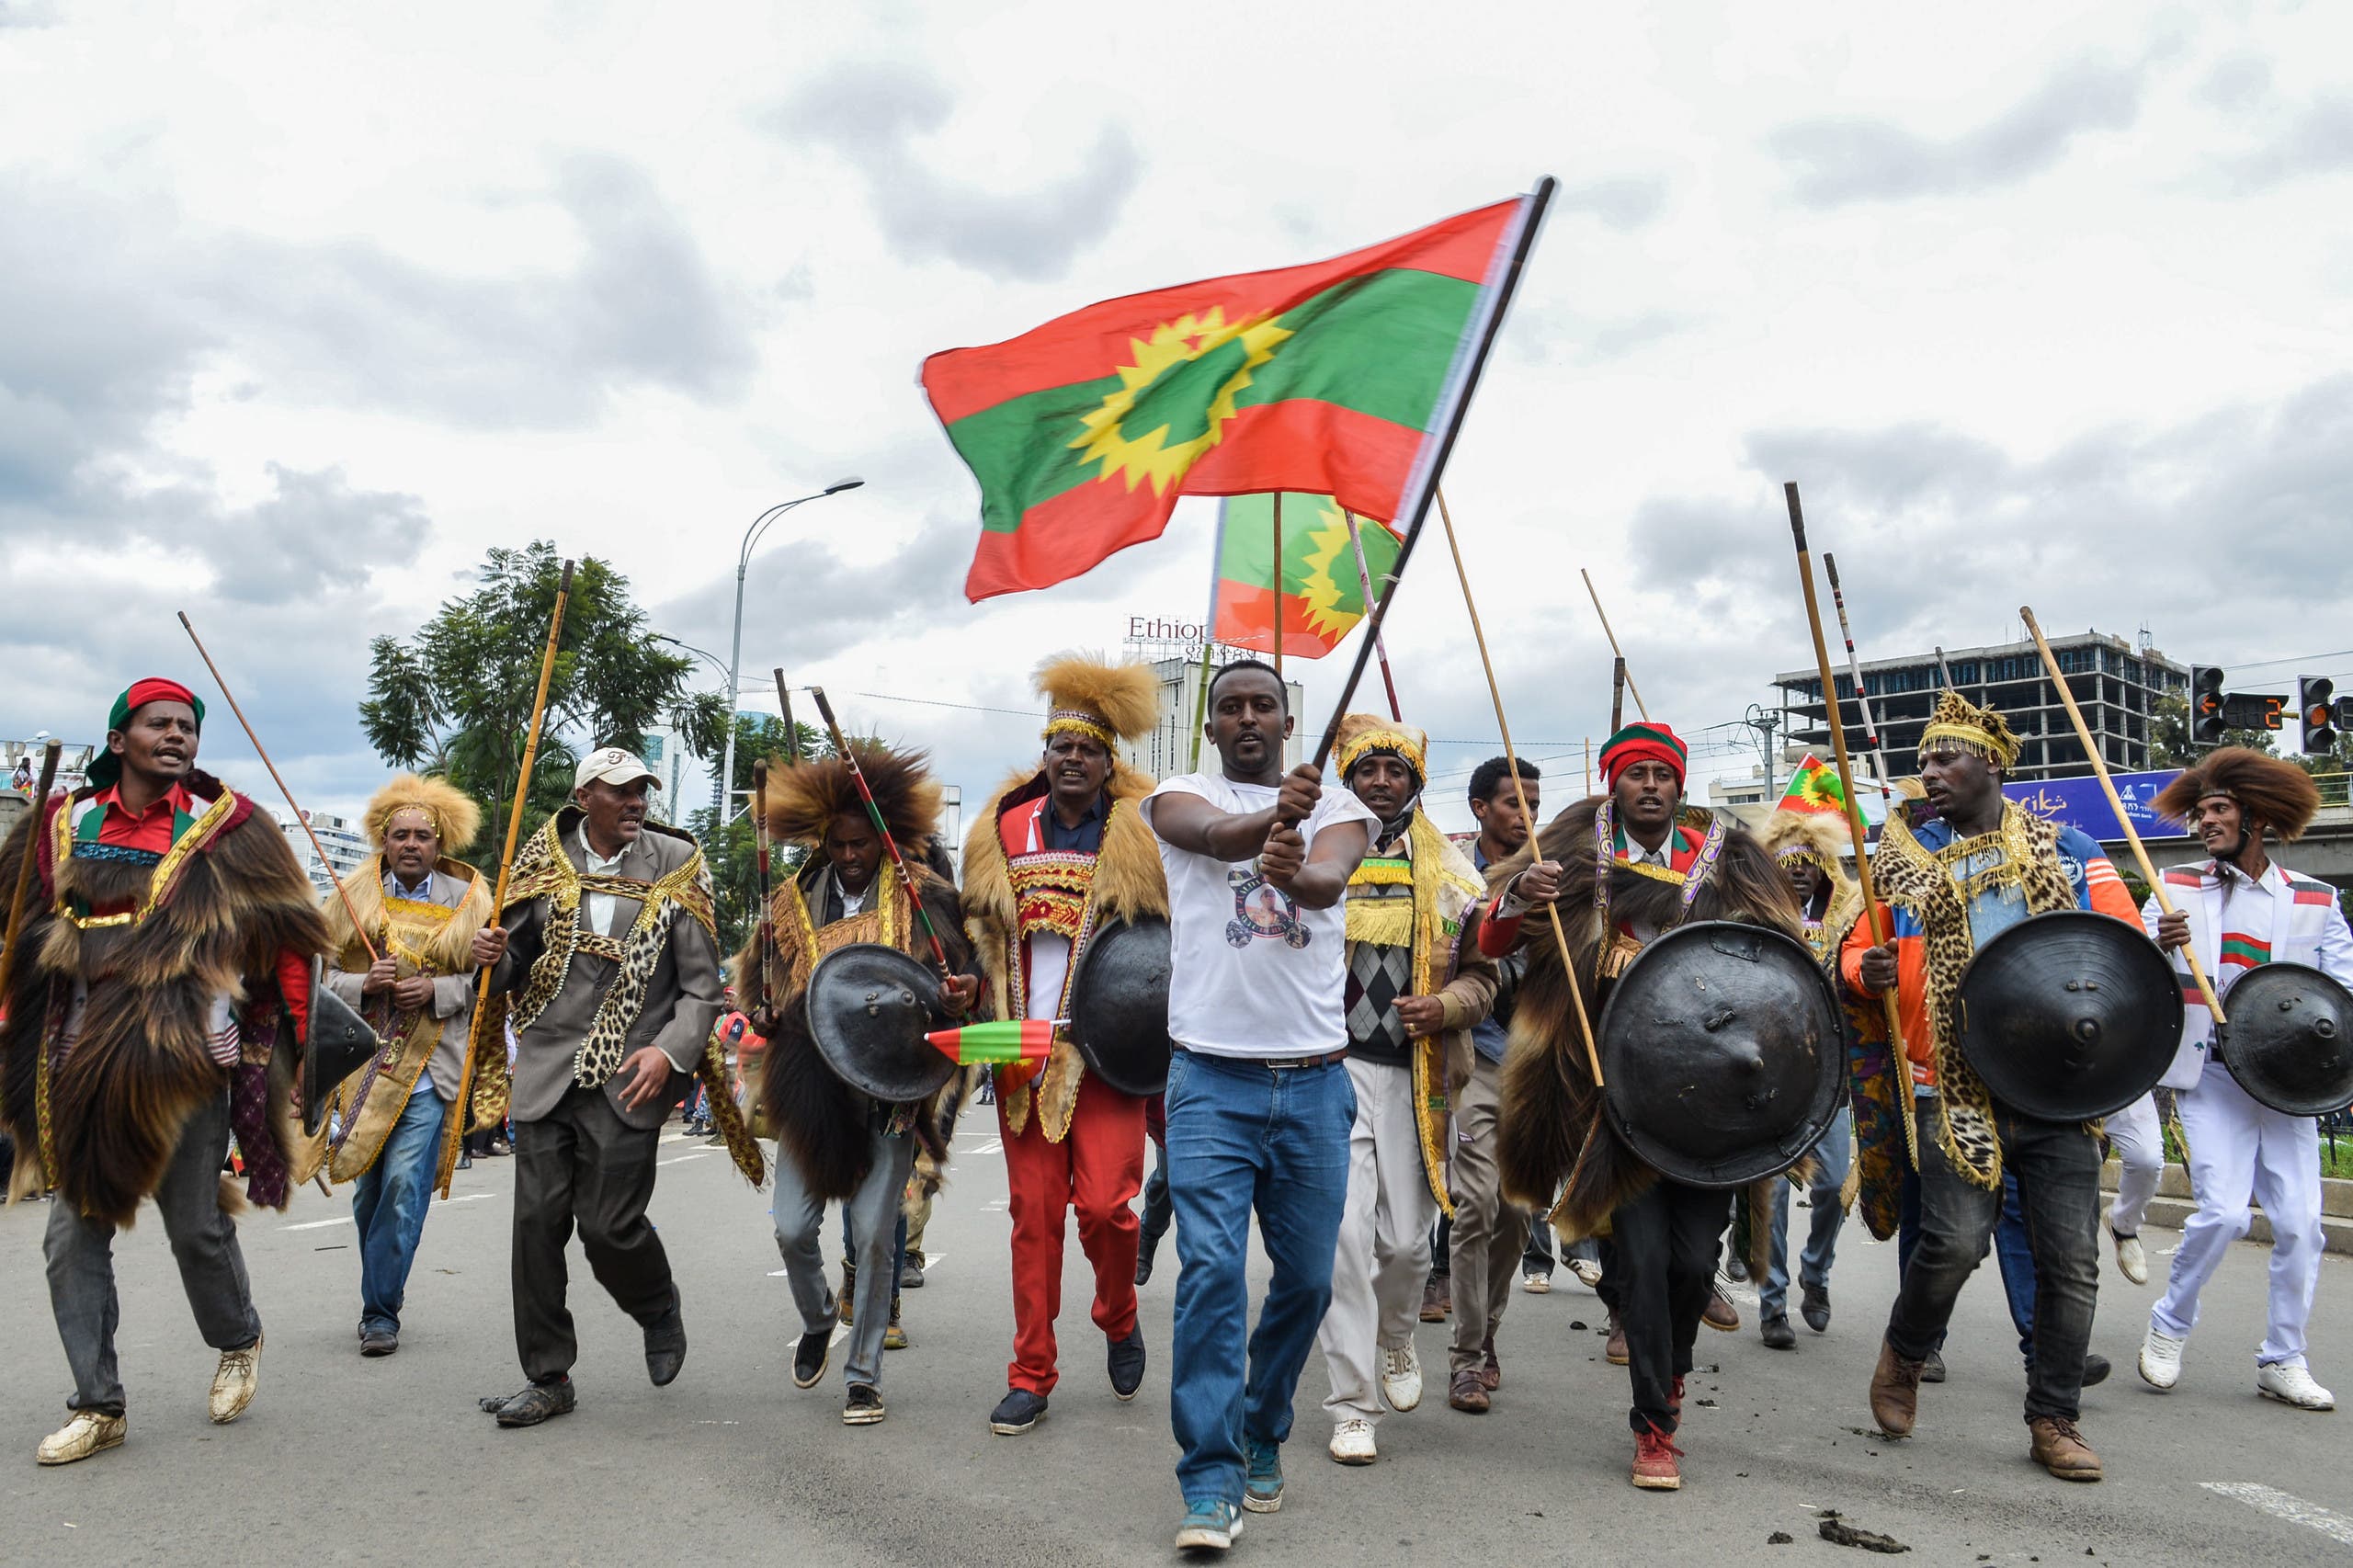 إثيوبيون من عرقية الأورومو يحتفلون في أديس أبابا في 2018 بعودة عناصر منفية من جبهة تحرير أورومو